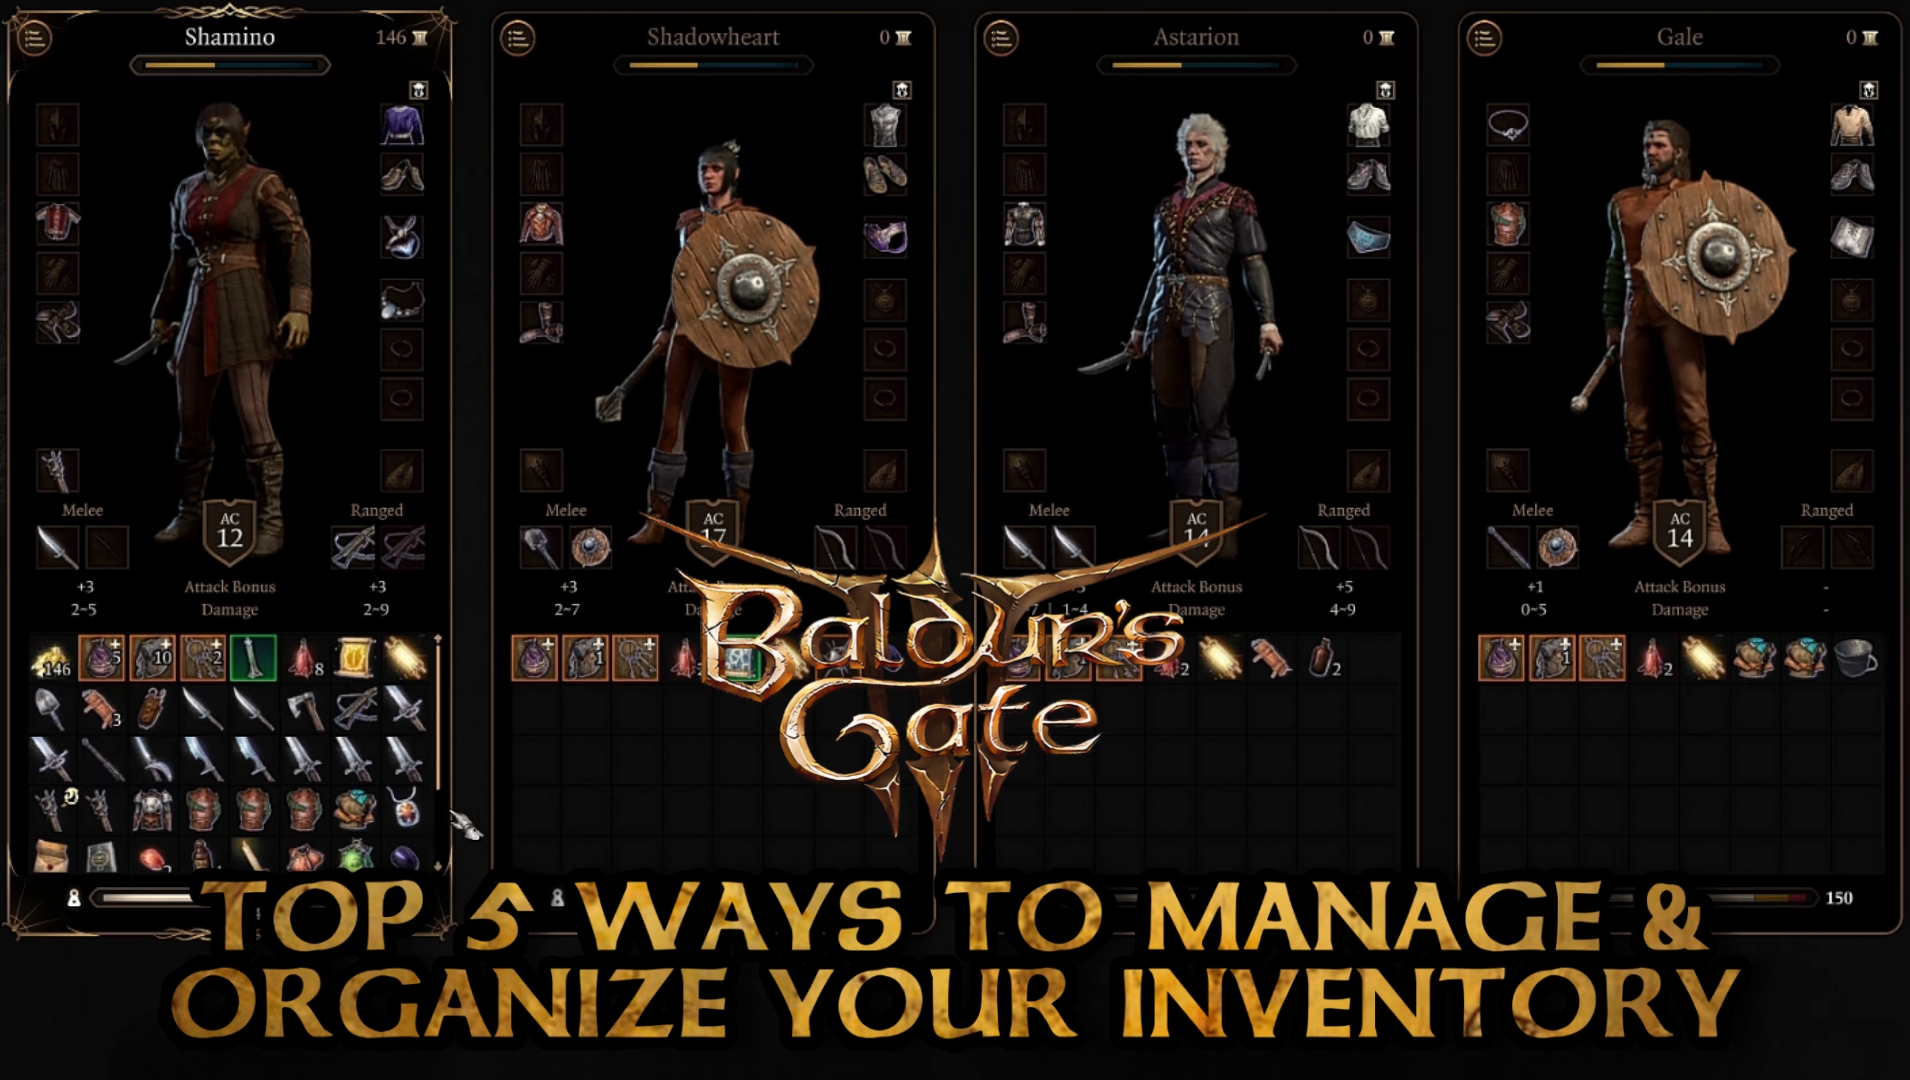 As 5 principais maneiras de gerenciar e organizar seu estoque – capa do Baldur’s Gate 3